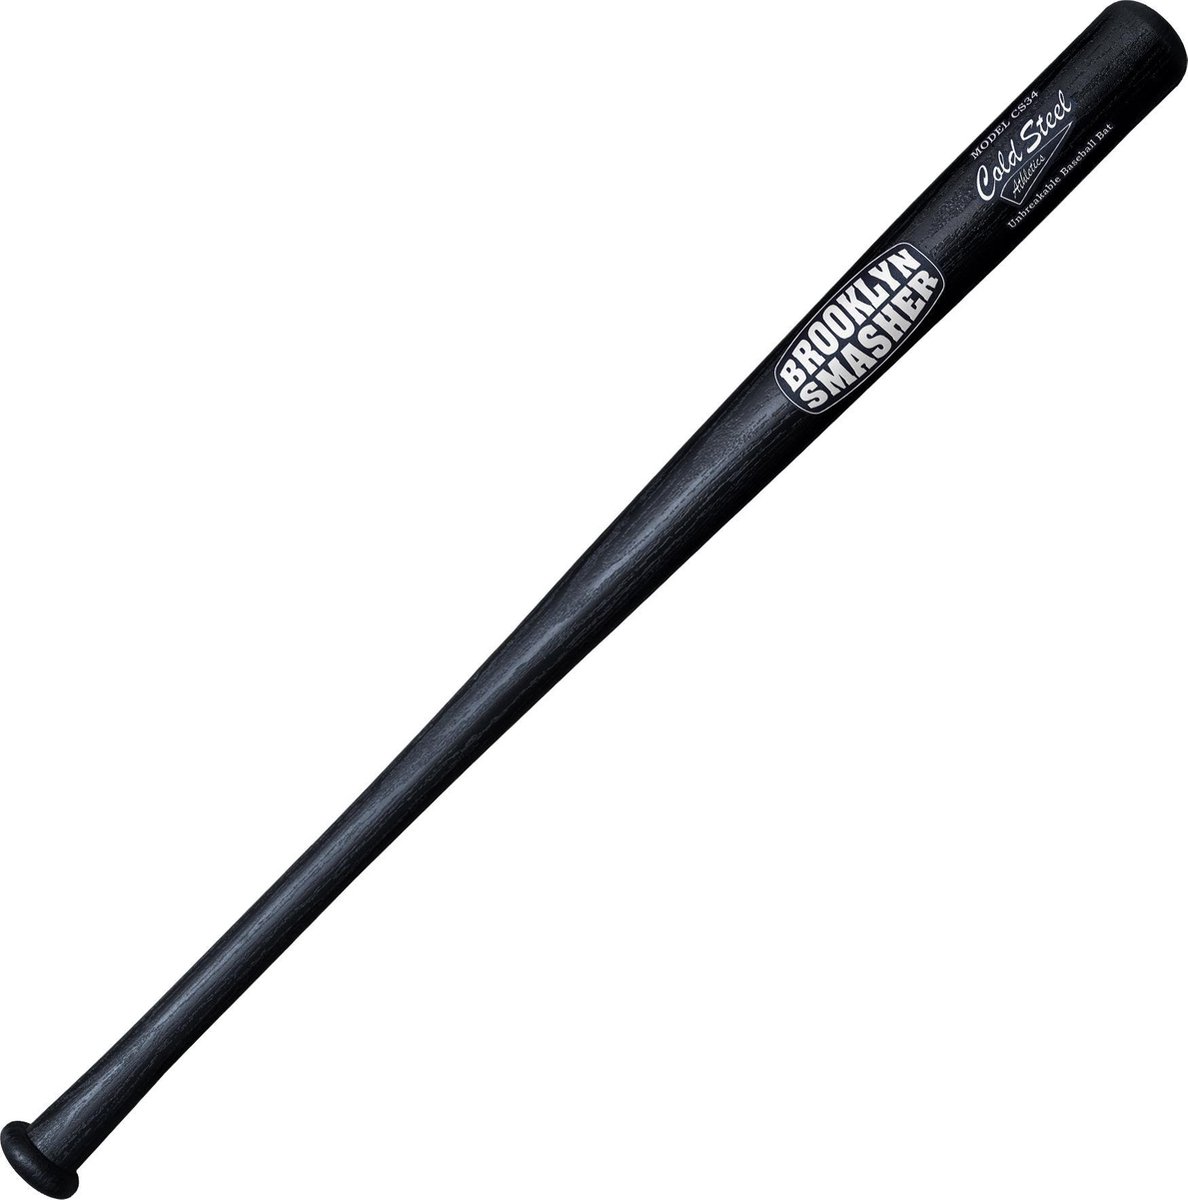 Onbreekbare Honkbalknuppel - The Smasher - 87 cm Kunststof Baseball Bat Honkbal Knuppel Onbreekbaar - Cold Steel